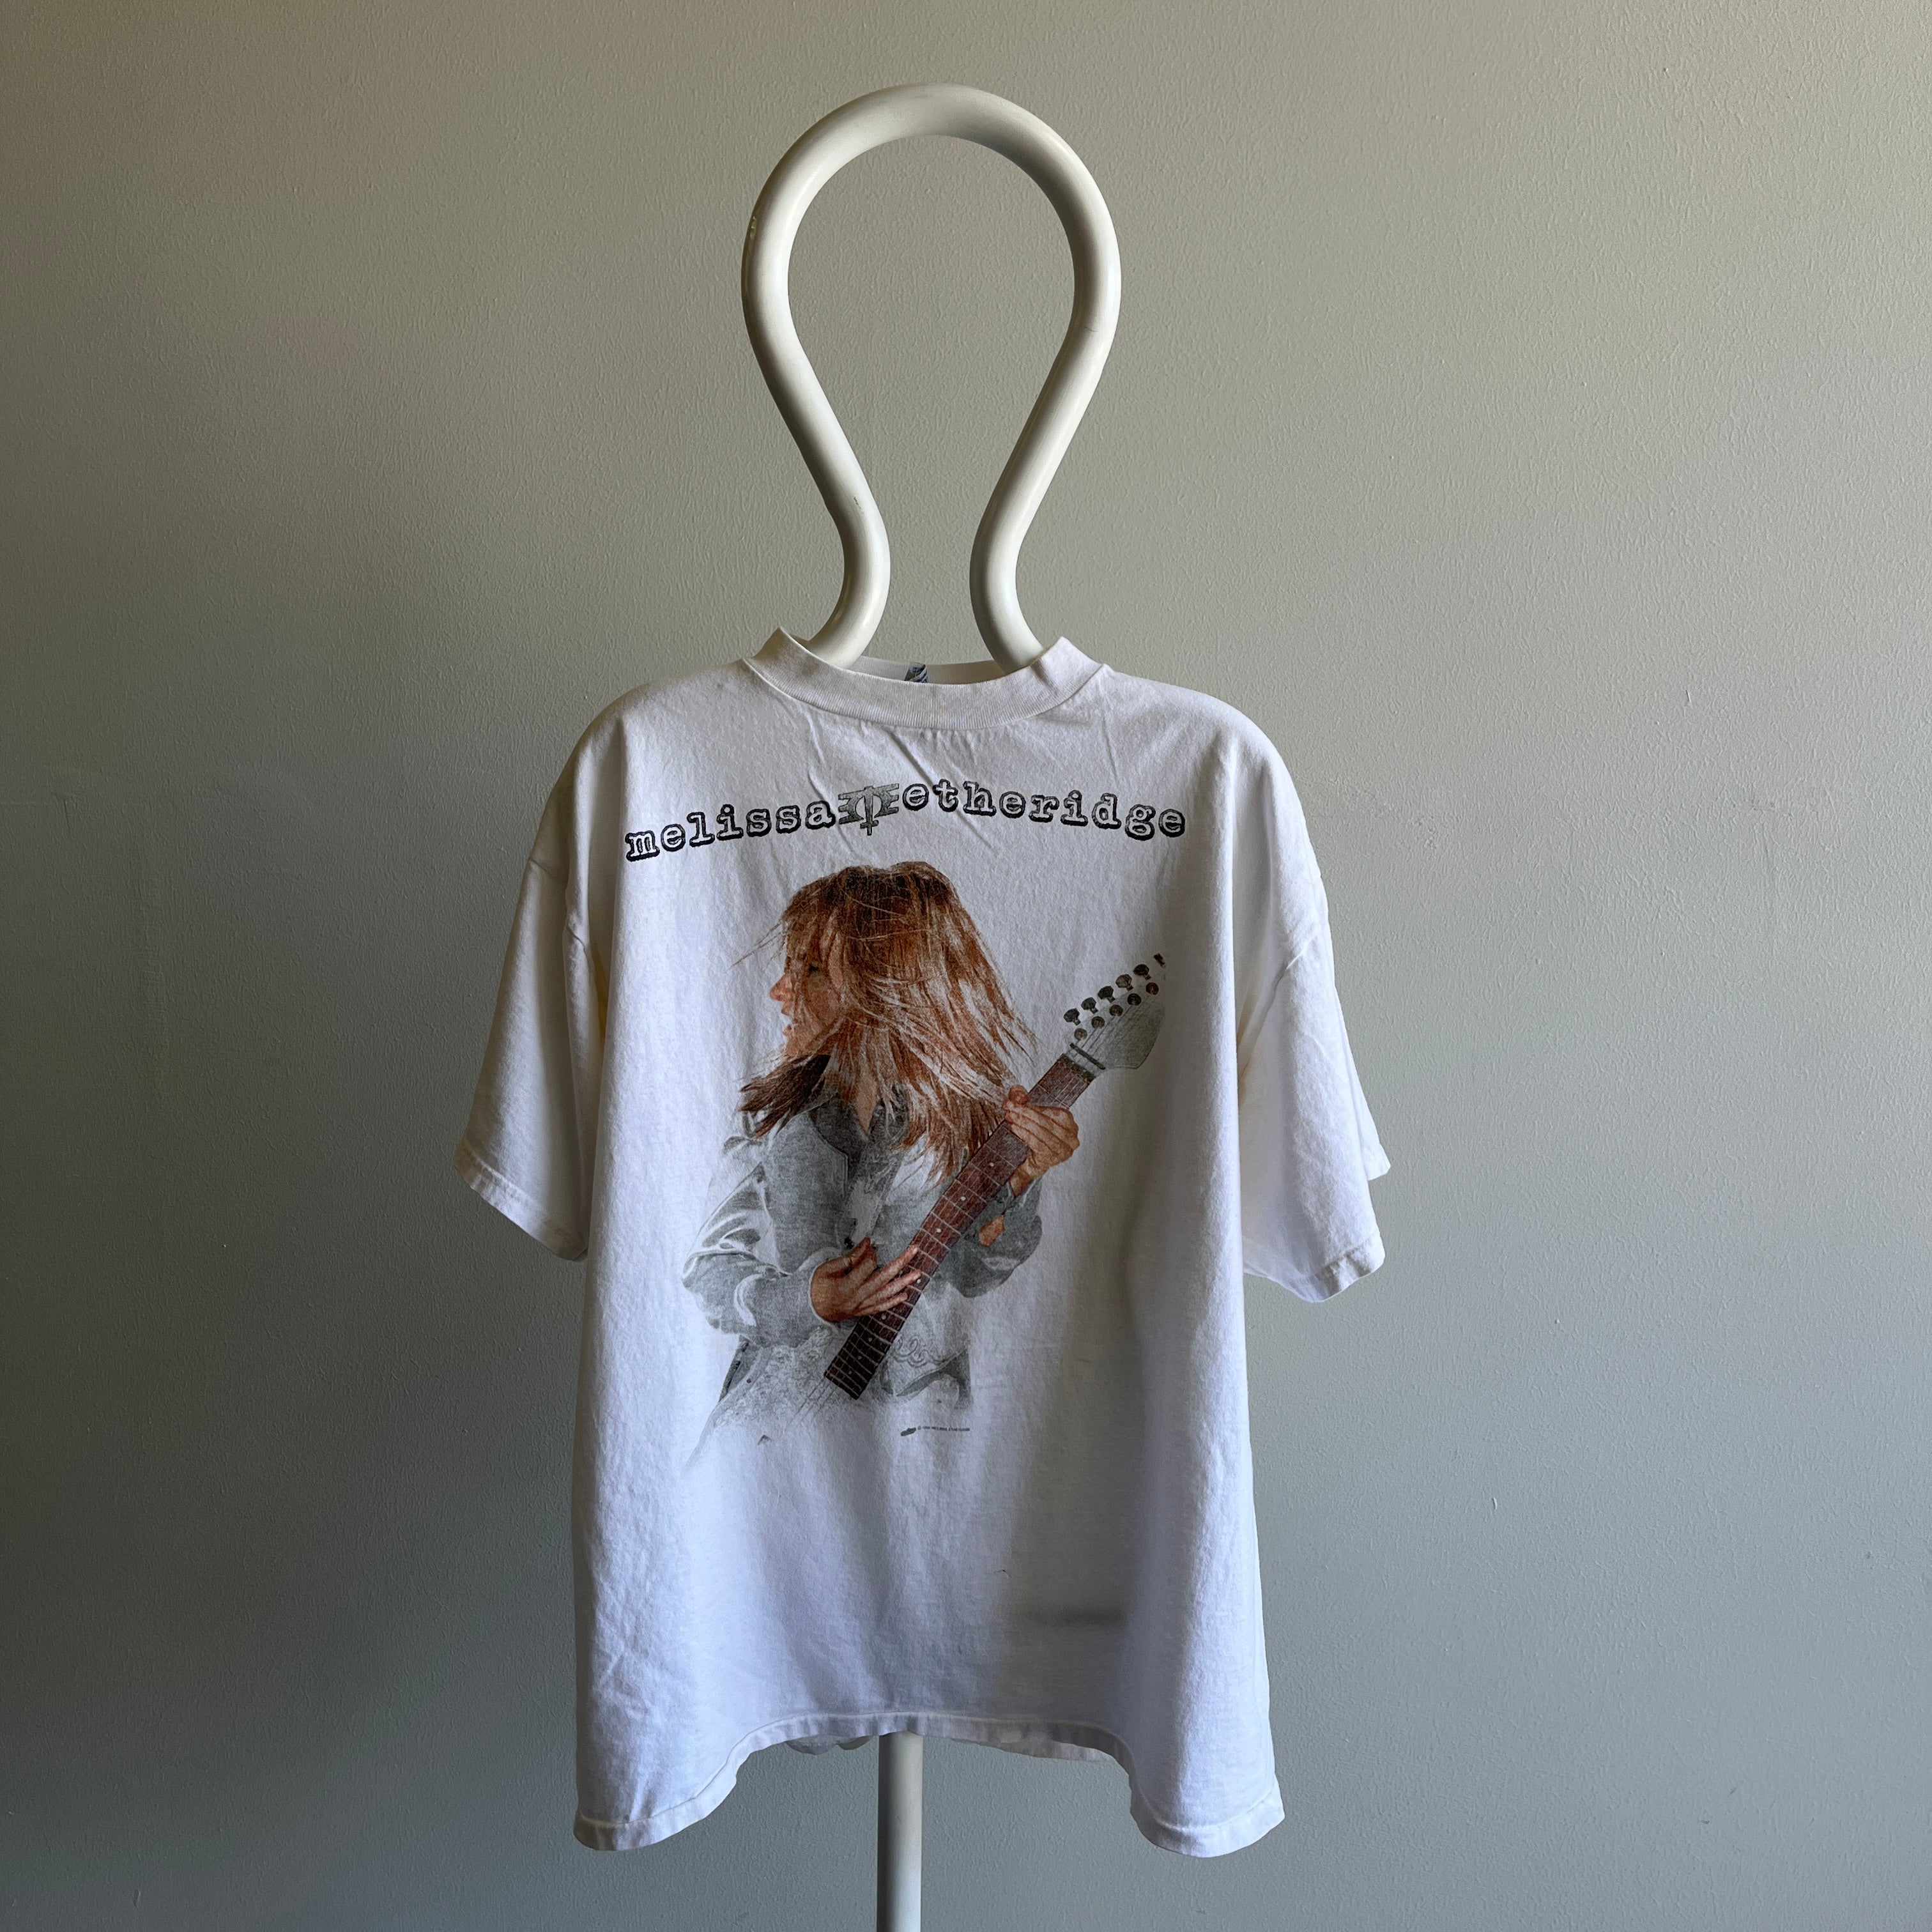 1995 Melissa Etheridge Your Little Secret Tour T-Shirt